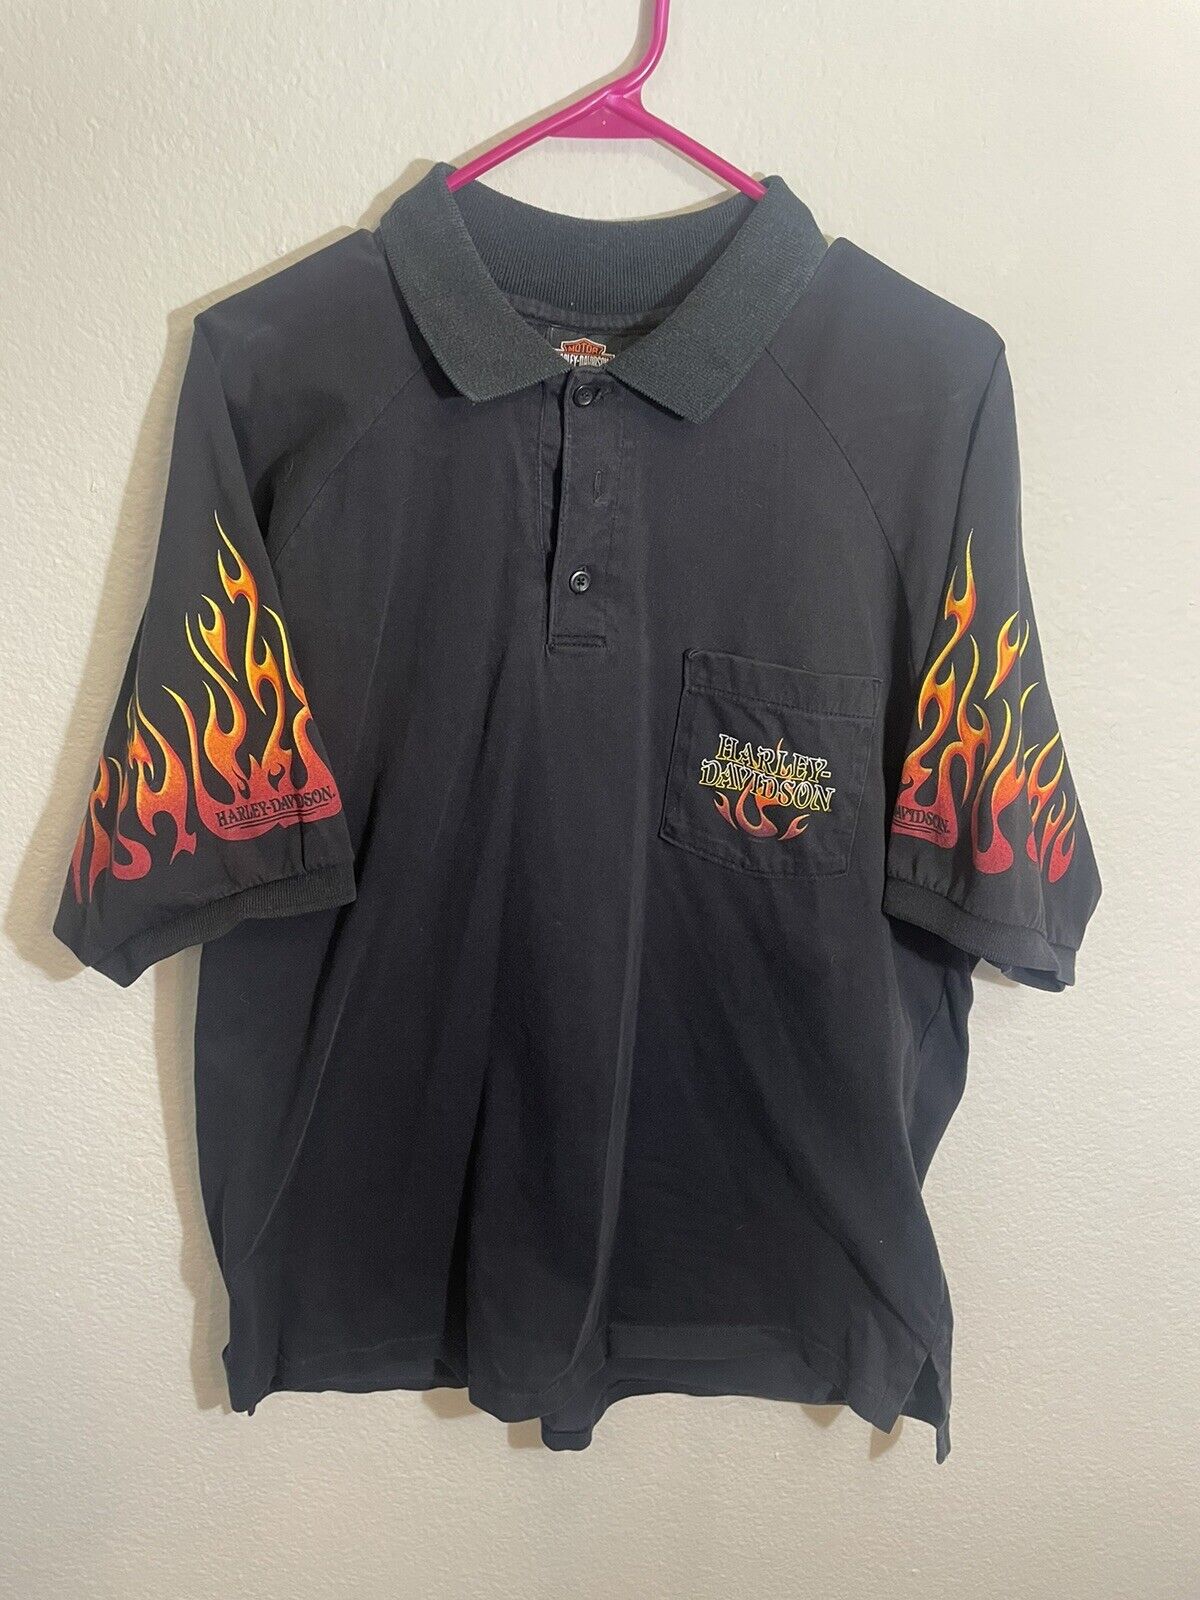 2006 harley davidson polo shirt